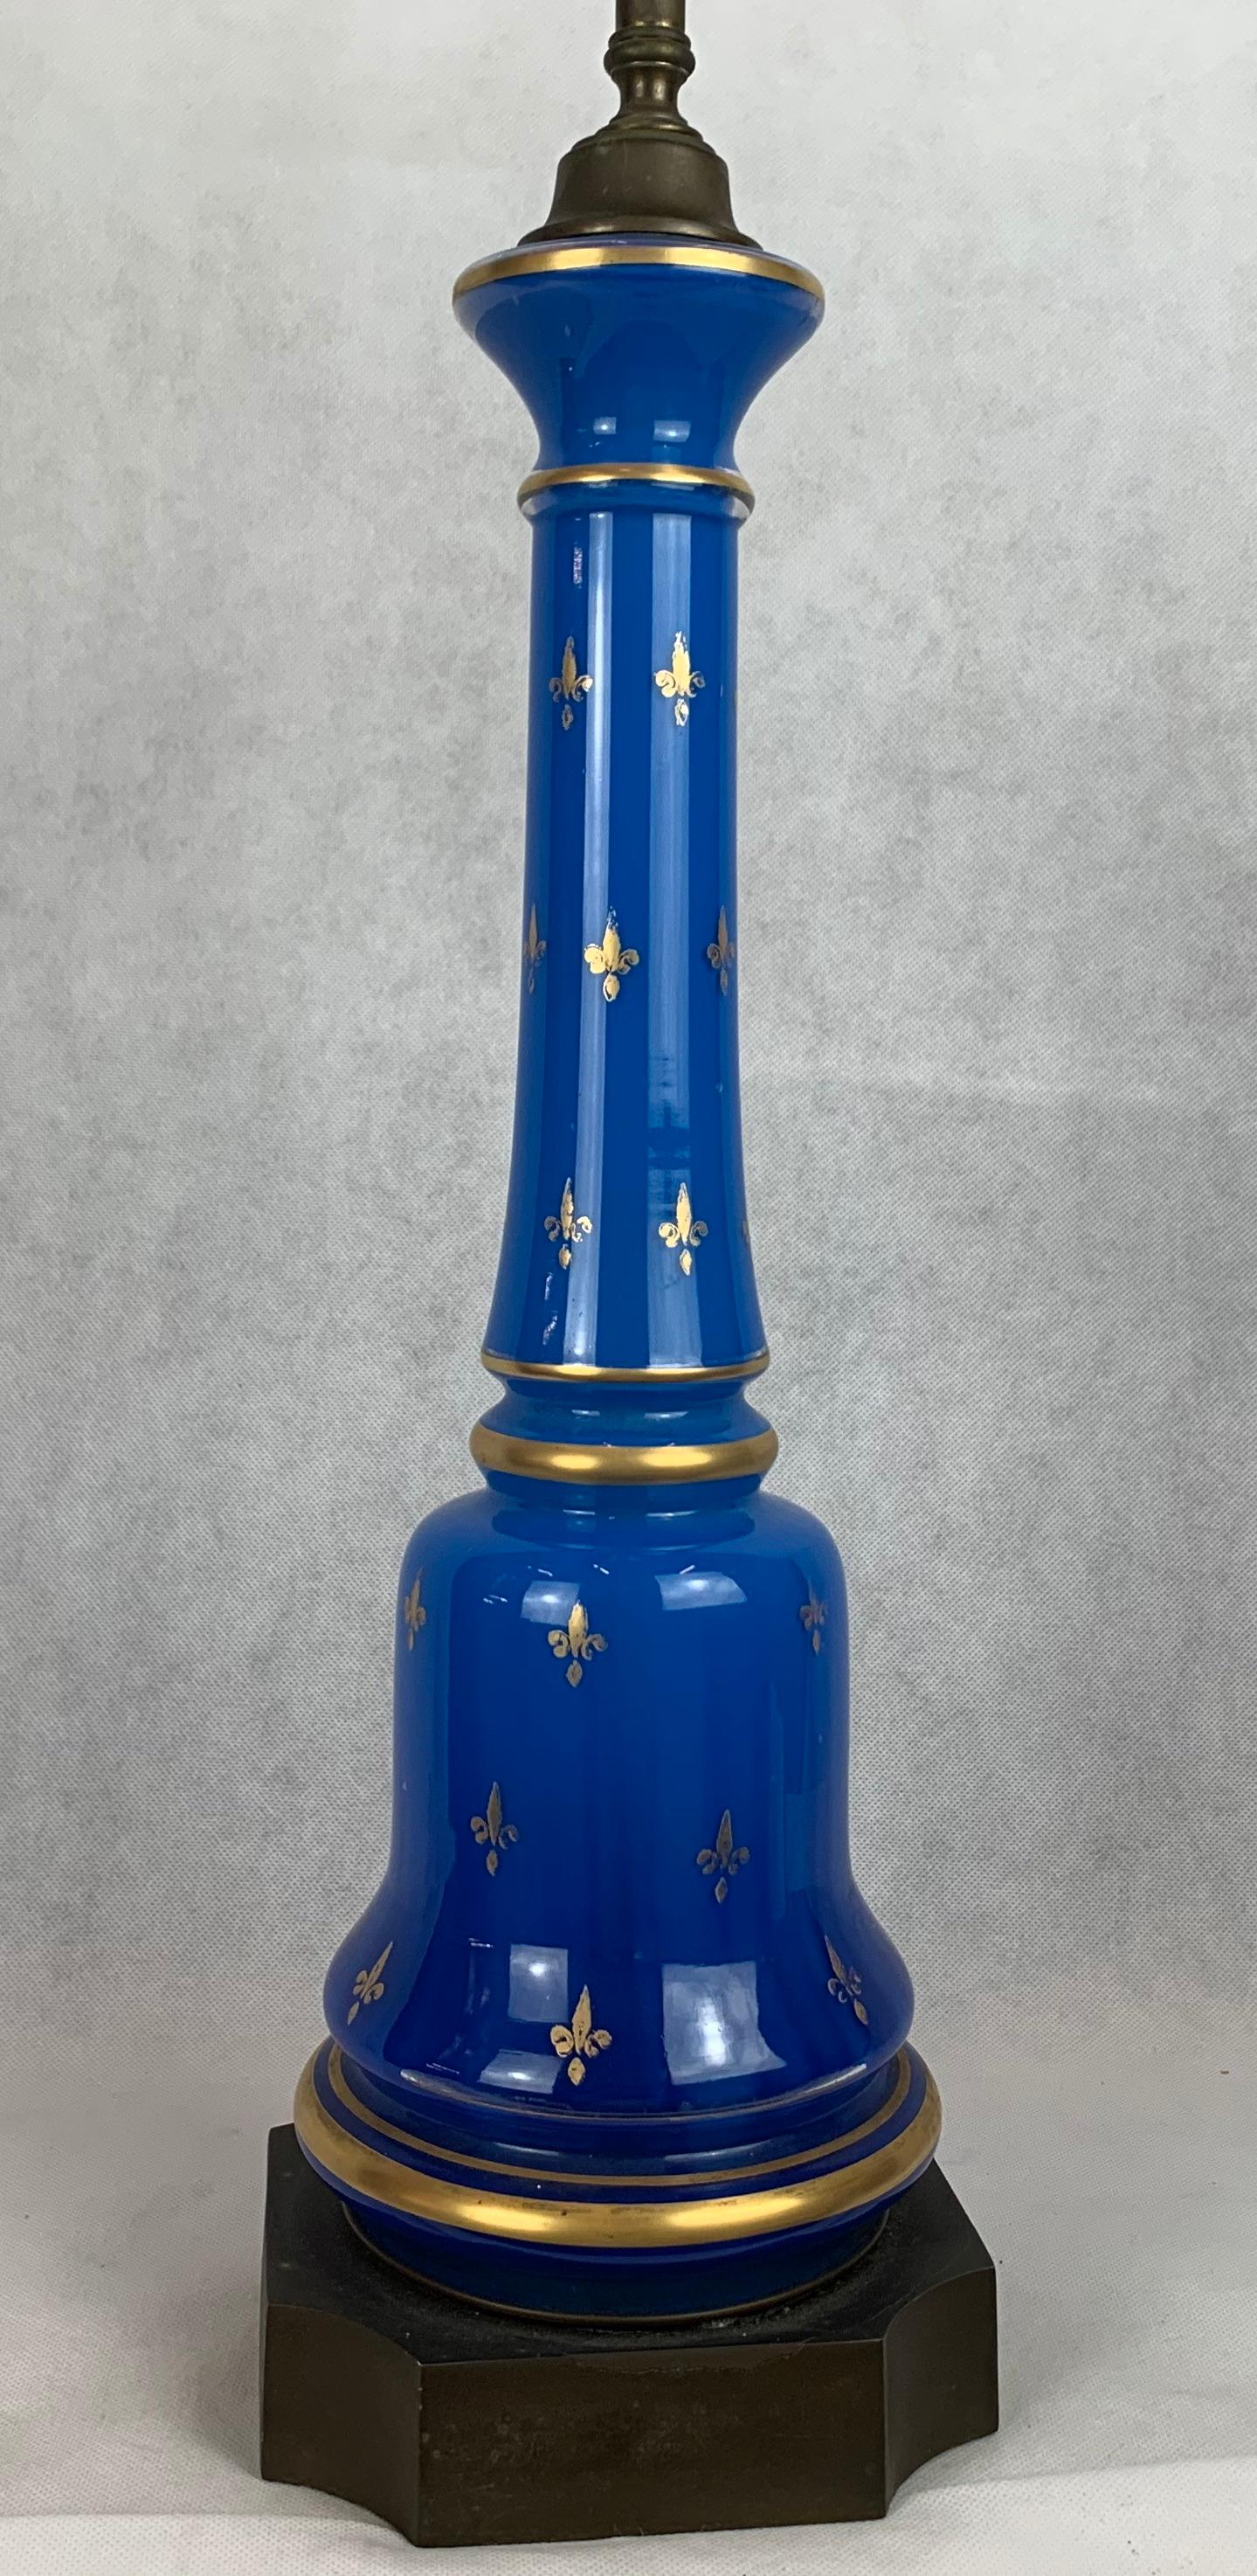  Lampe en verre opalin bleu français montée sur une base noire. L'extérieur de la lampe est orné de fleurs de lys dorées.
L'abat-jour n'est pas inclus.
Dimensions : Partie en verre de la lampe 18.25